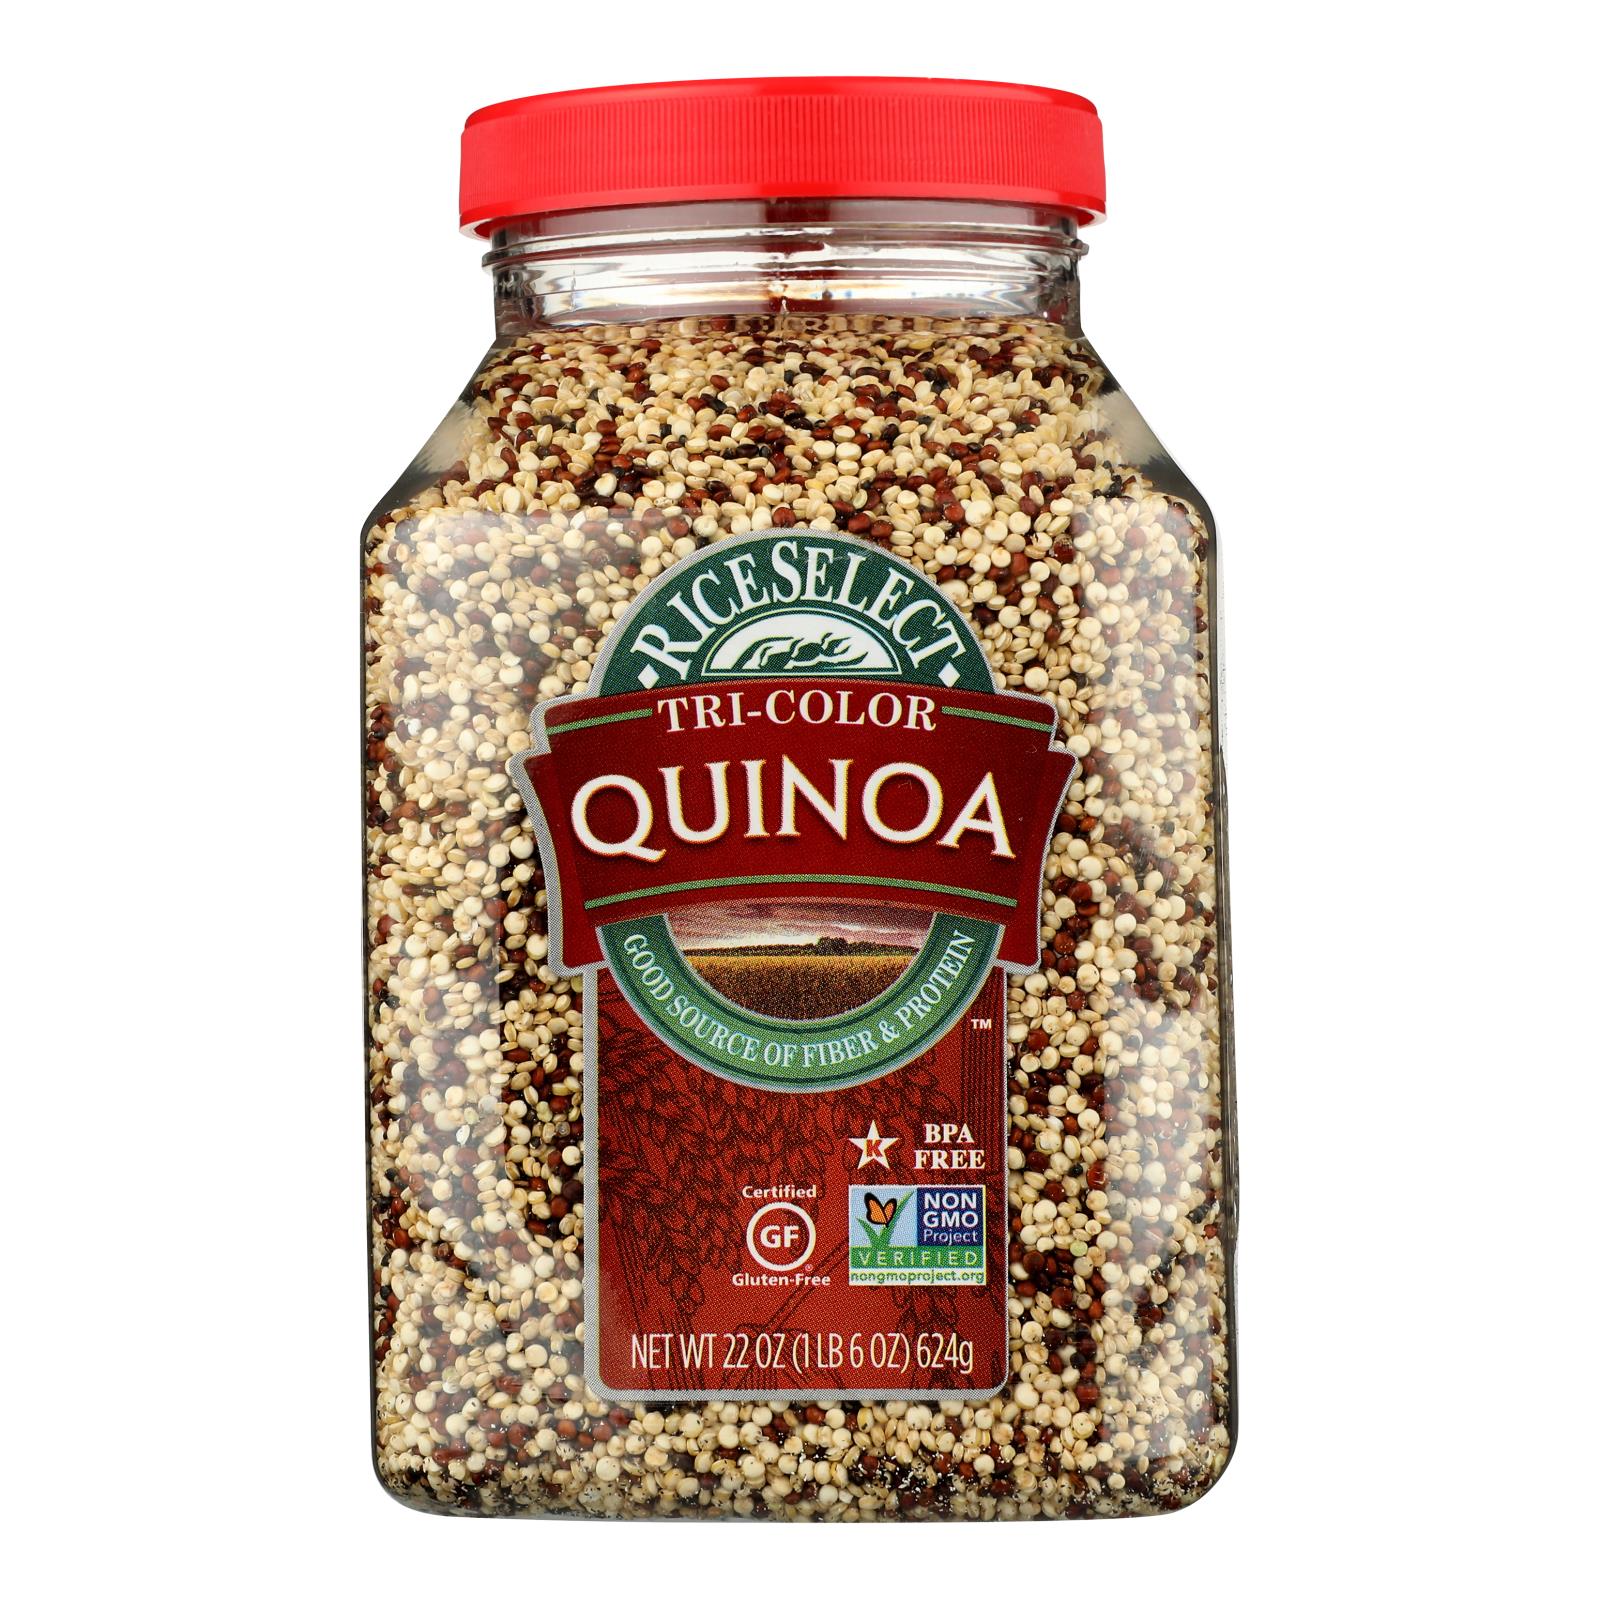 Rice Select Tricolor Quinoa - Case of 4 - 22 OZ